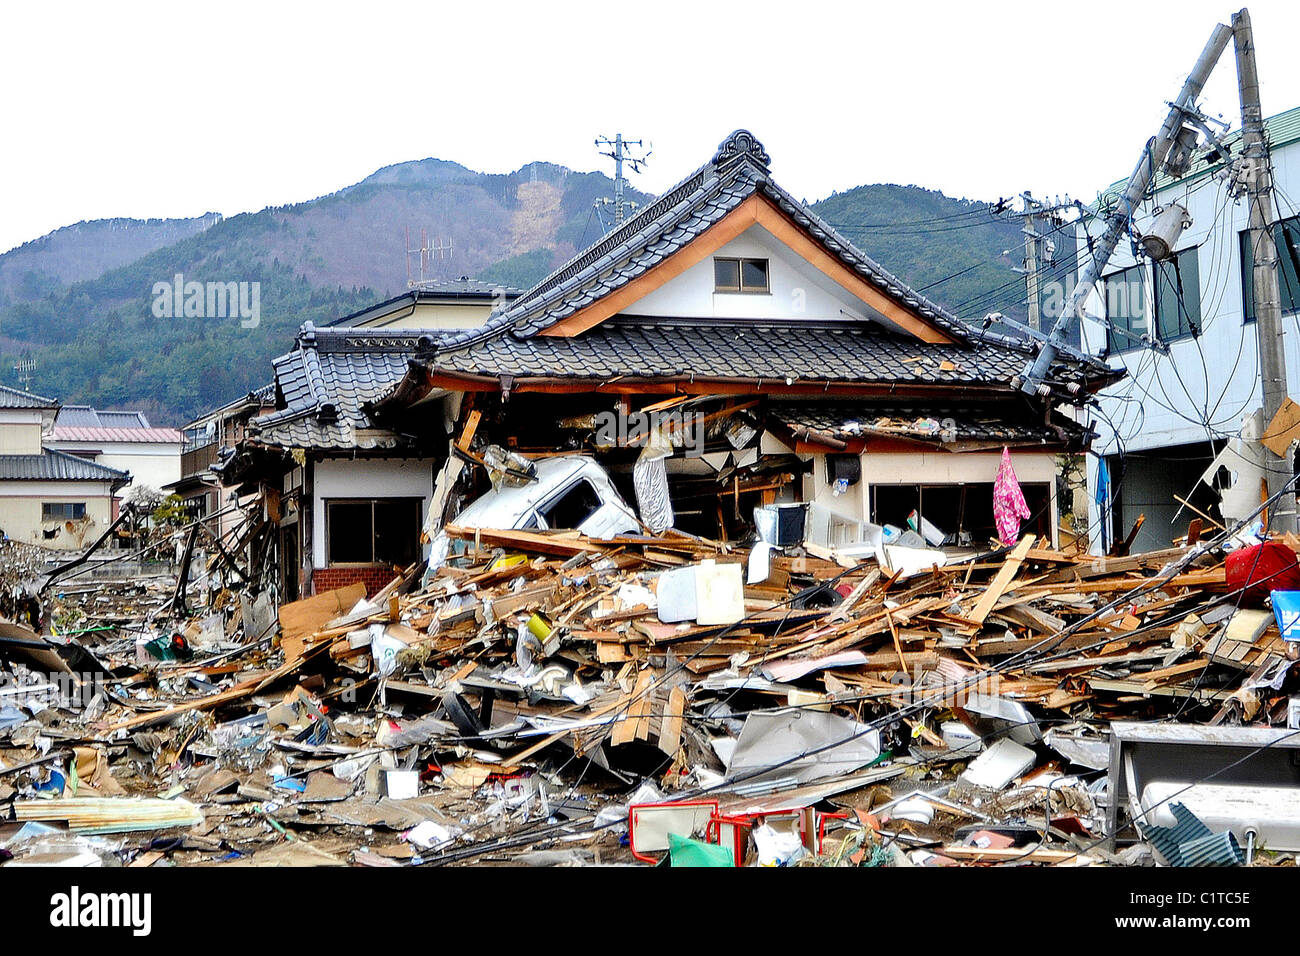 House se trouve dans les décombres à la suite d'un séisme de magnitude 8,9, qui a déclenché un tsunami dévastateur à travers cette côtière japonaise Banque D'Images